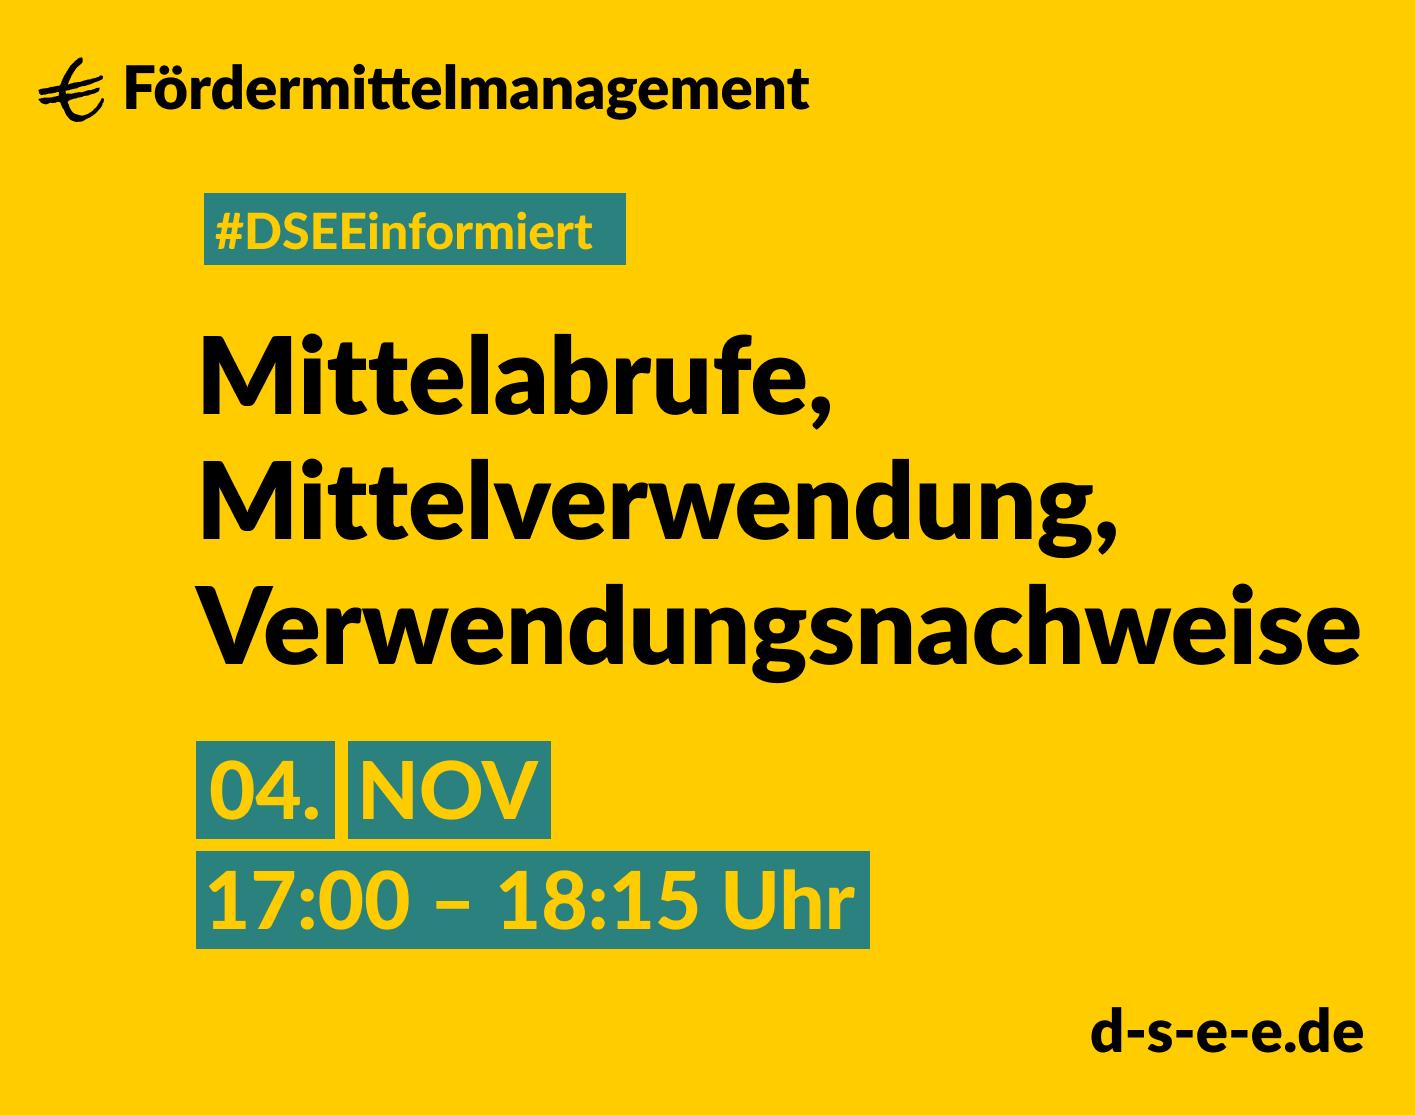 Grafik mit gelbem Hintergrund. Text: Fördermittelmanagement. #DSEEinformiert: Mittelabrufe, Mittelverwendung, Verwendungsnachweise. 4. Nov, 17:00-18:15 Uhr. d-s-e-e.de